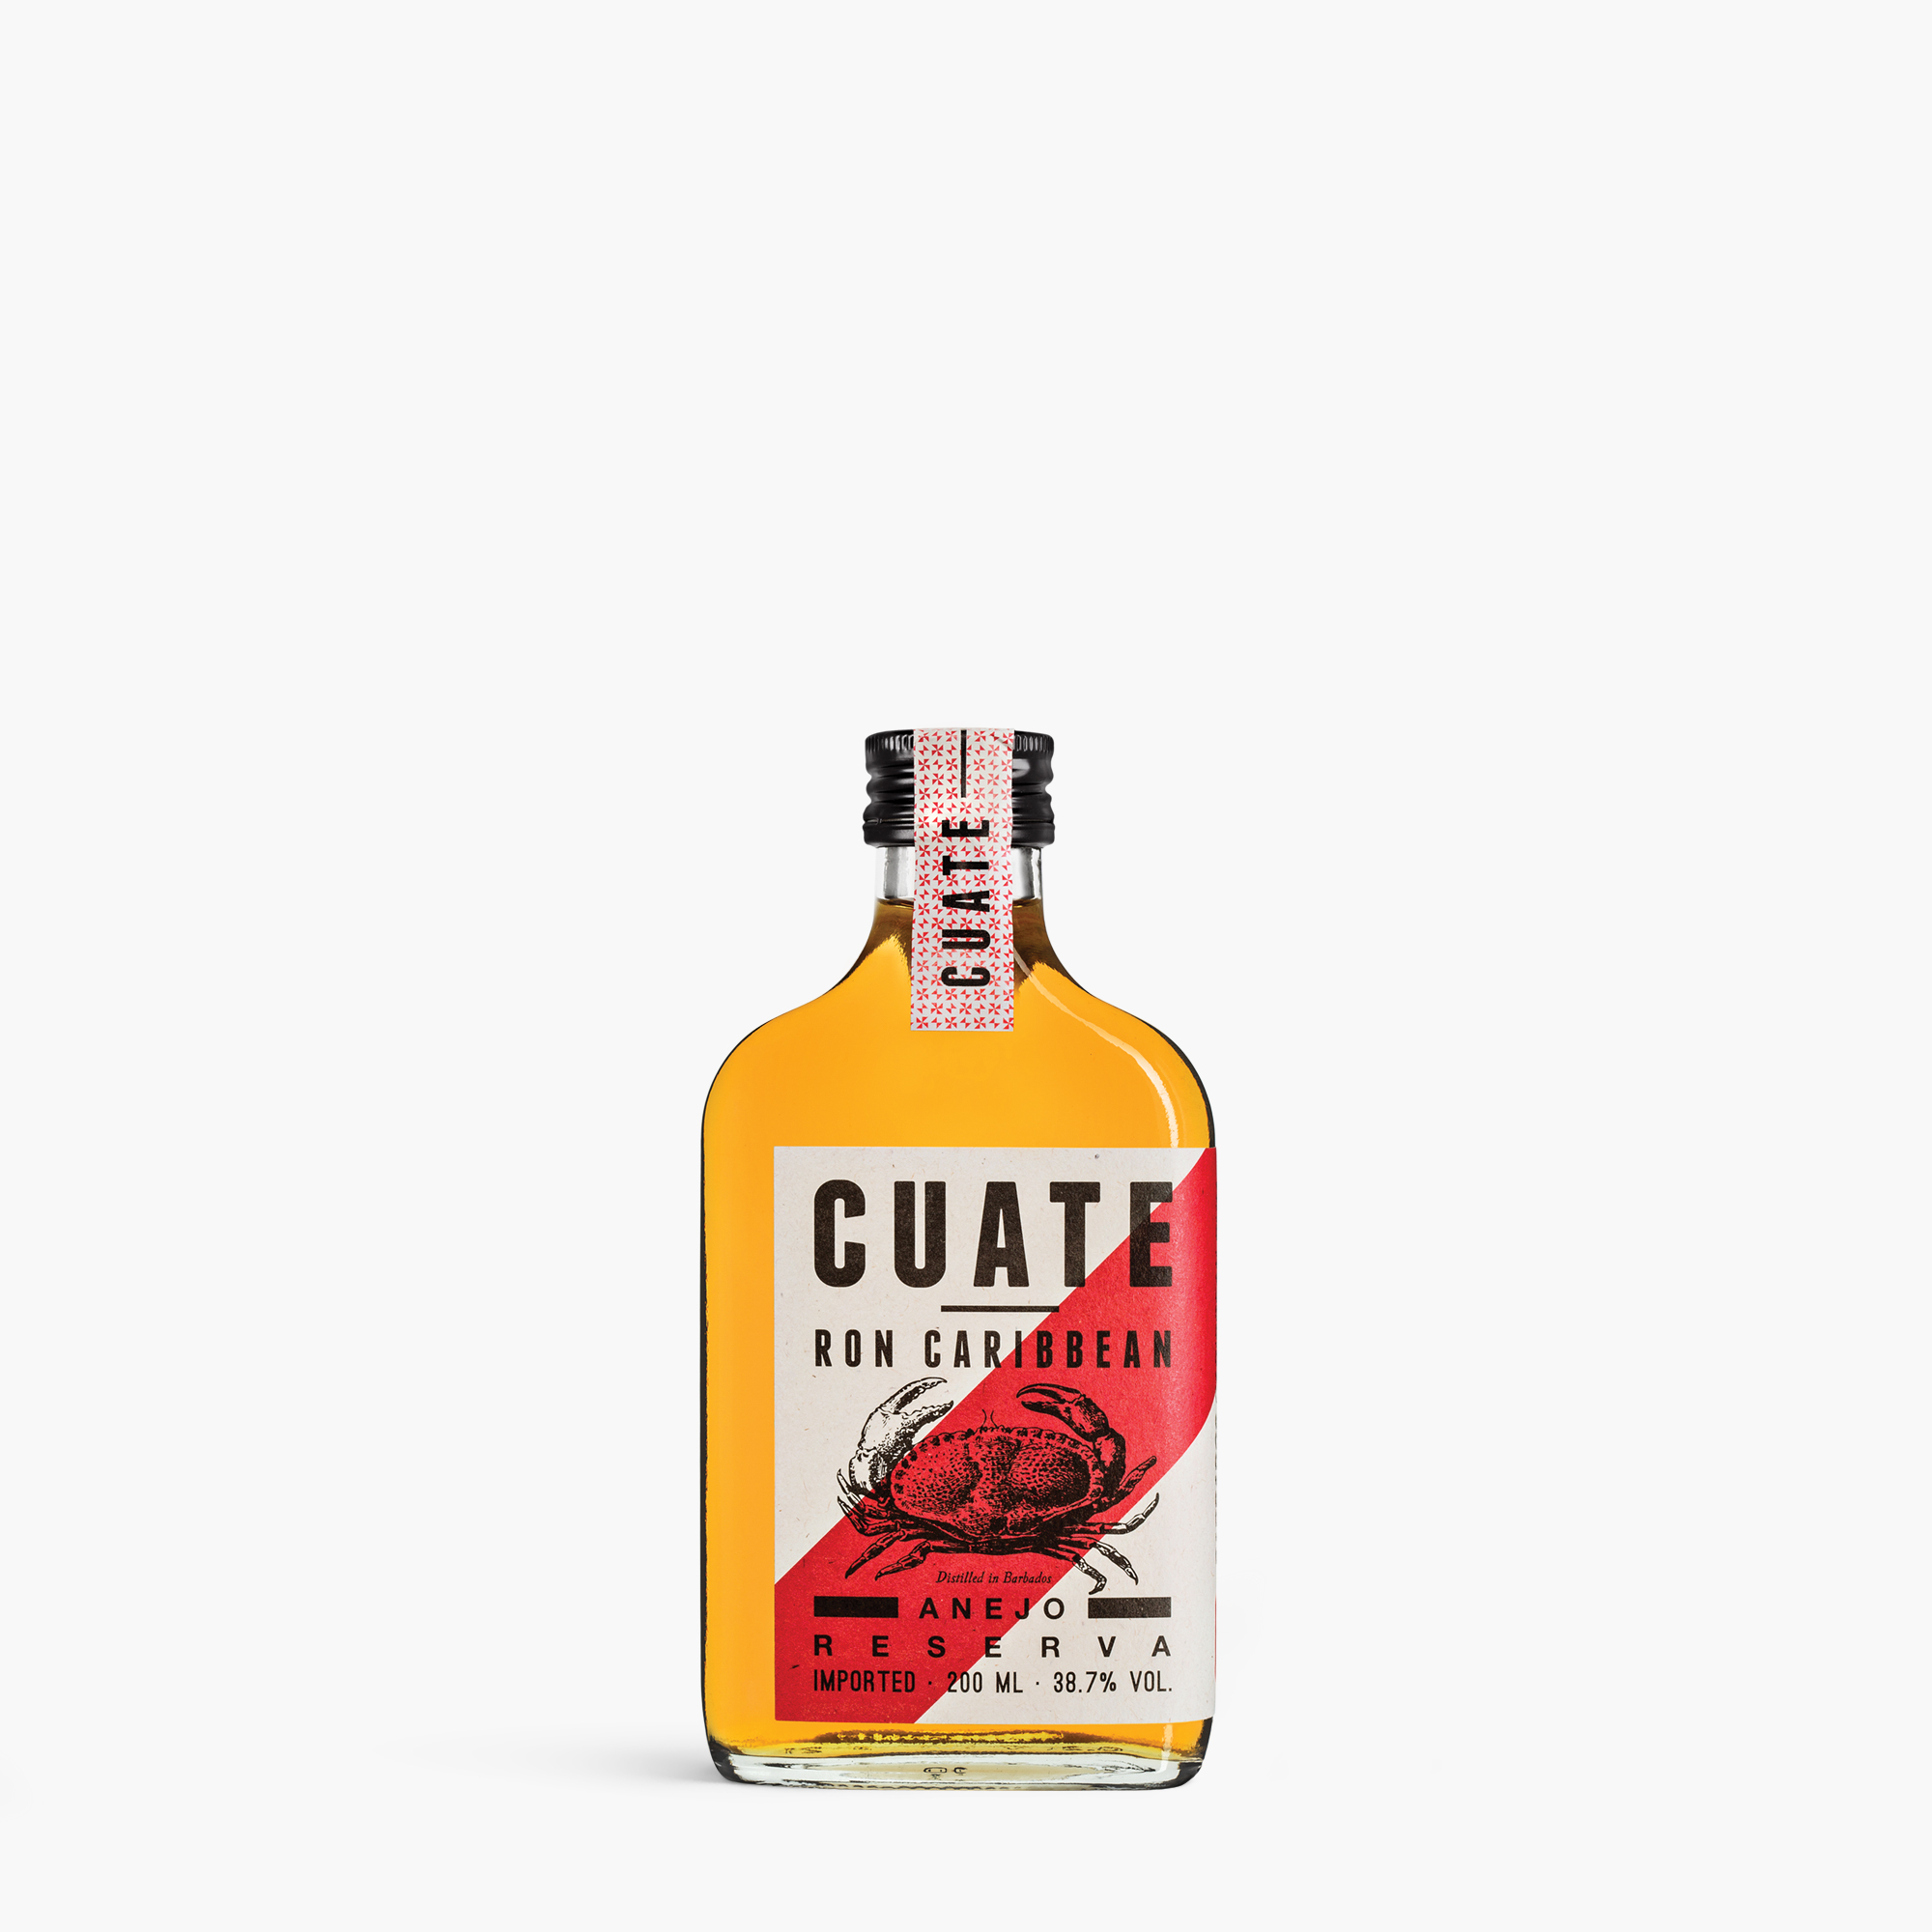 Cuate Rum 04